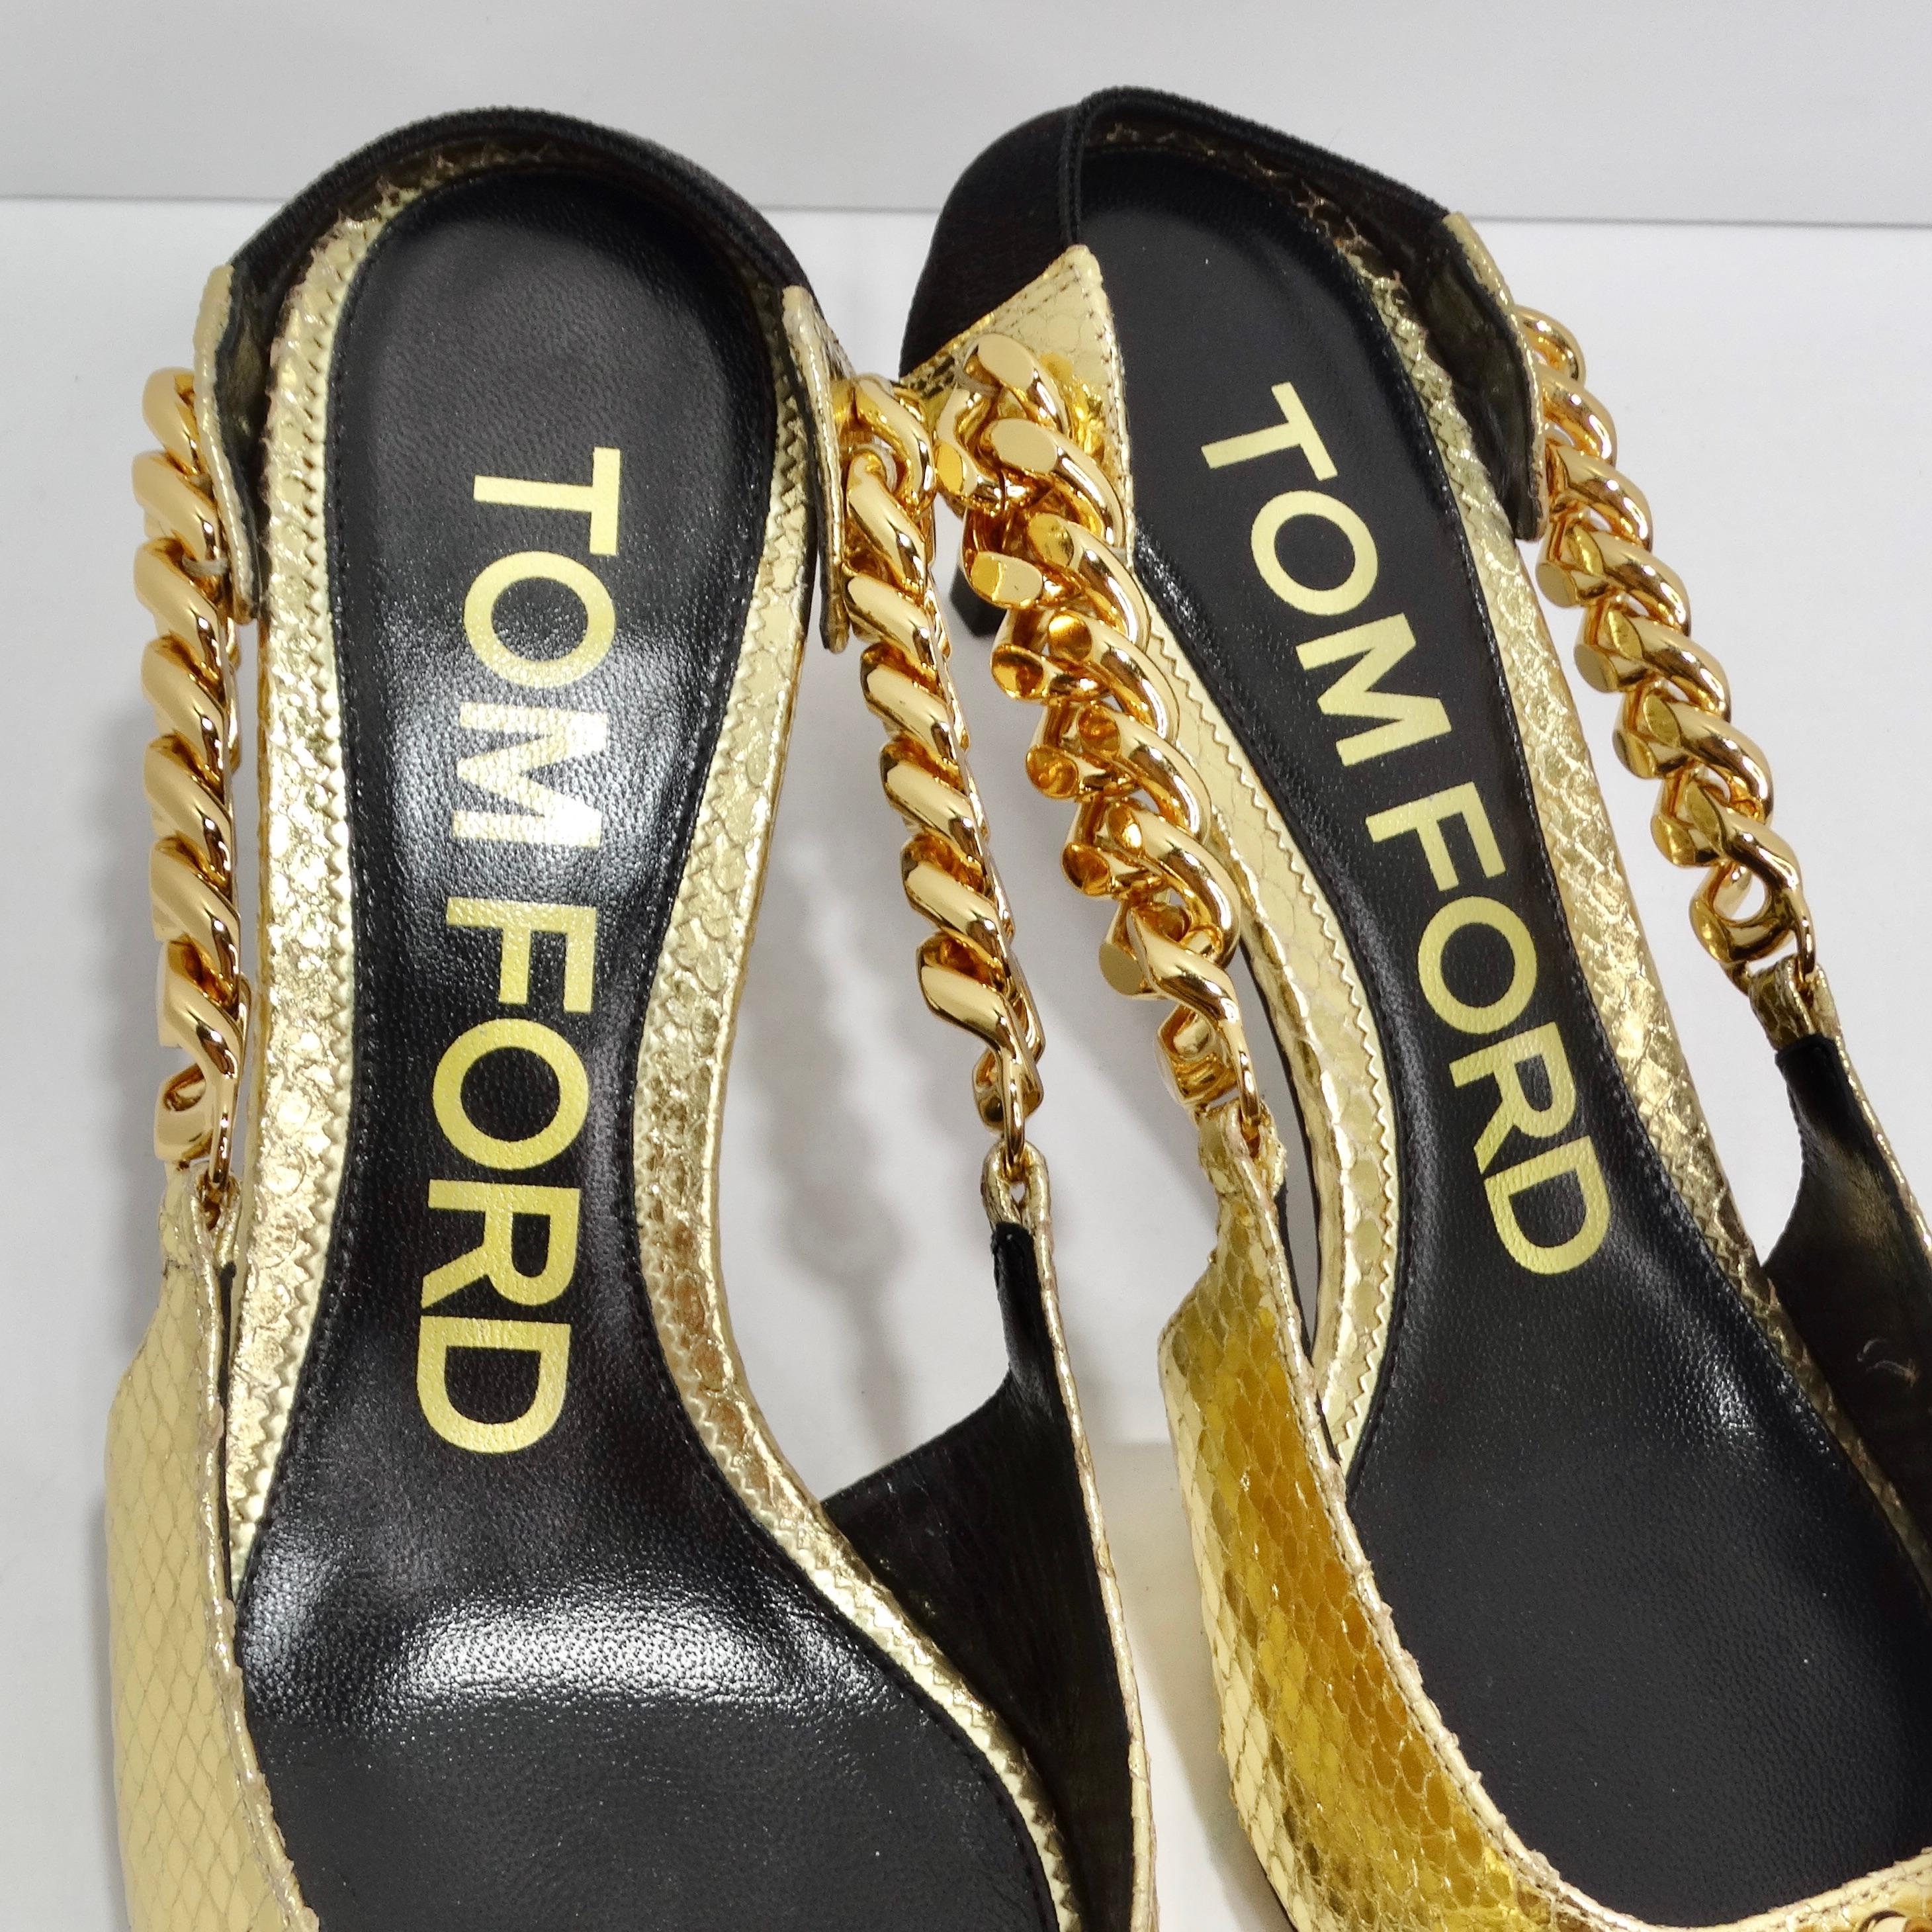 
Voici les escarpins à talon aiguille en chaîne dorée Tom Ford, un mélange captivant de luxe, de style et de design audacieux qui élèvera votre collection de chaussures à de nouveaux sommets. Ces escarpins sont une véritable incarnation de